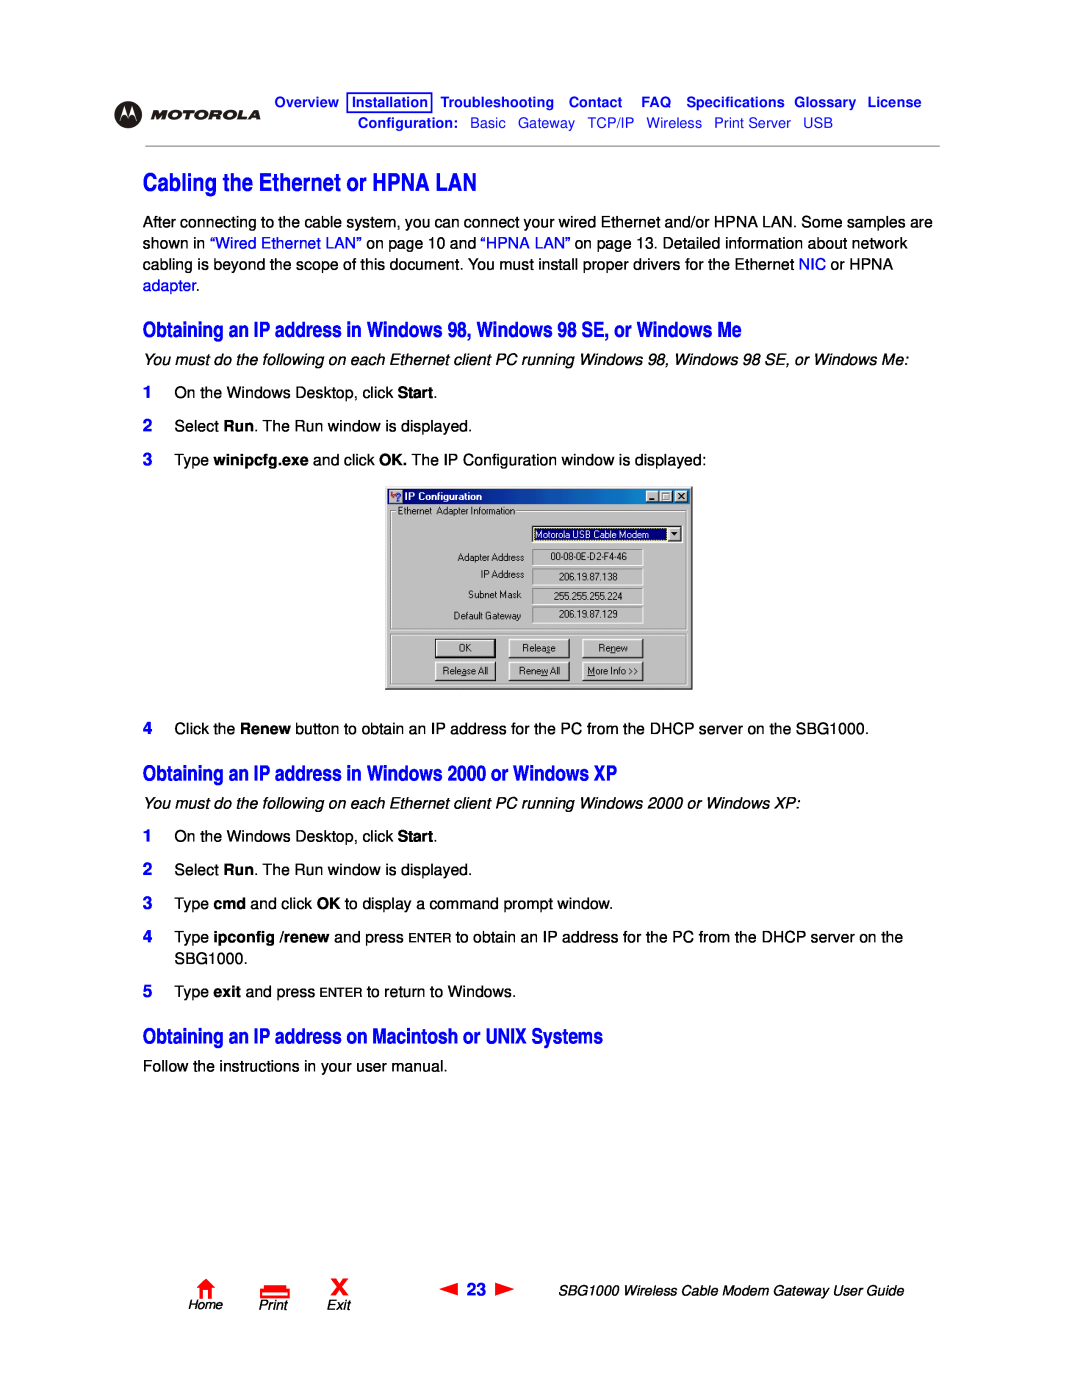 Motorola SBG1000 Cabling the Ethernet or HPNA LAN, Obtaining an IP address in Windows 98, Windows 98 SE, or Windows Me 